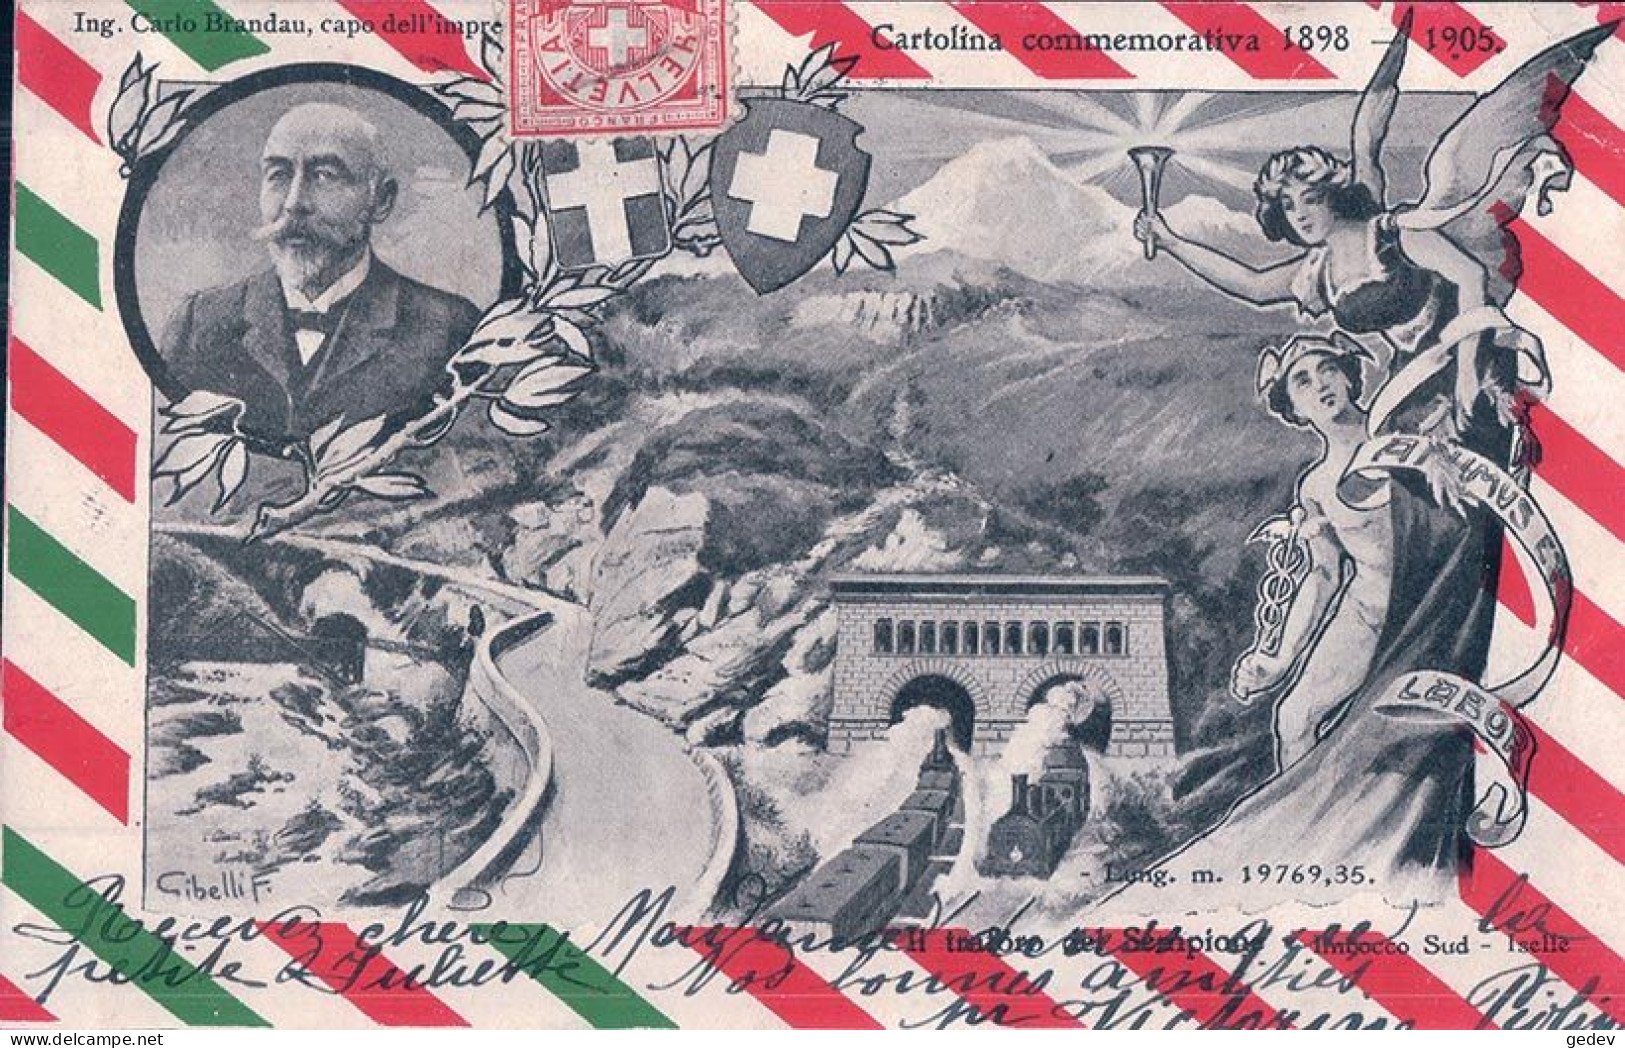 Cartolina Commemorativa 1898 - 1905, L Traforo Del Sempione, Imbocco Sud, Iselle, Illustrateur Gibelli F. (11.4.1905) - Kunstwerken